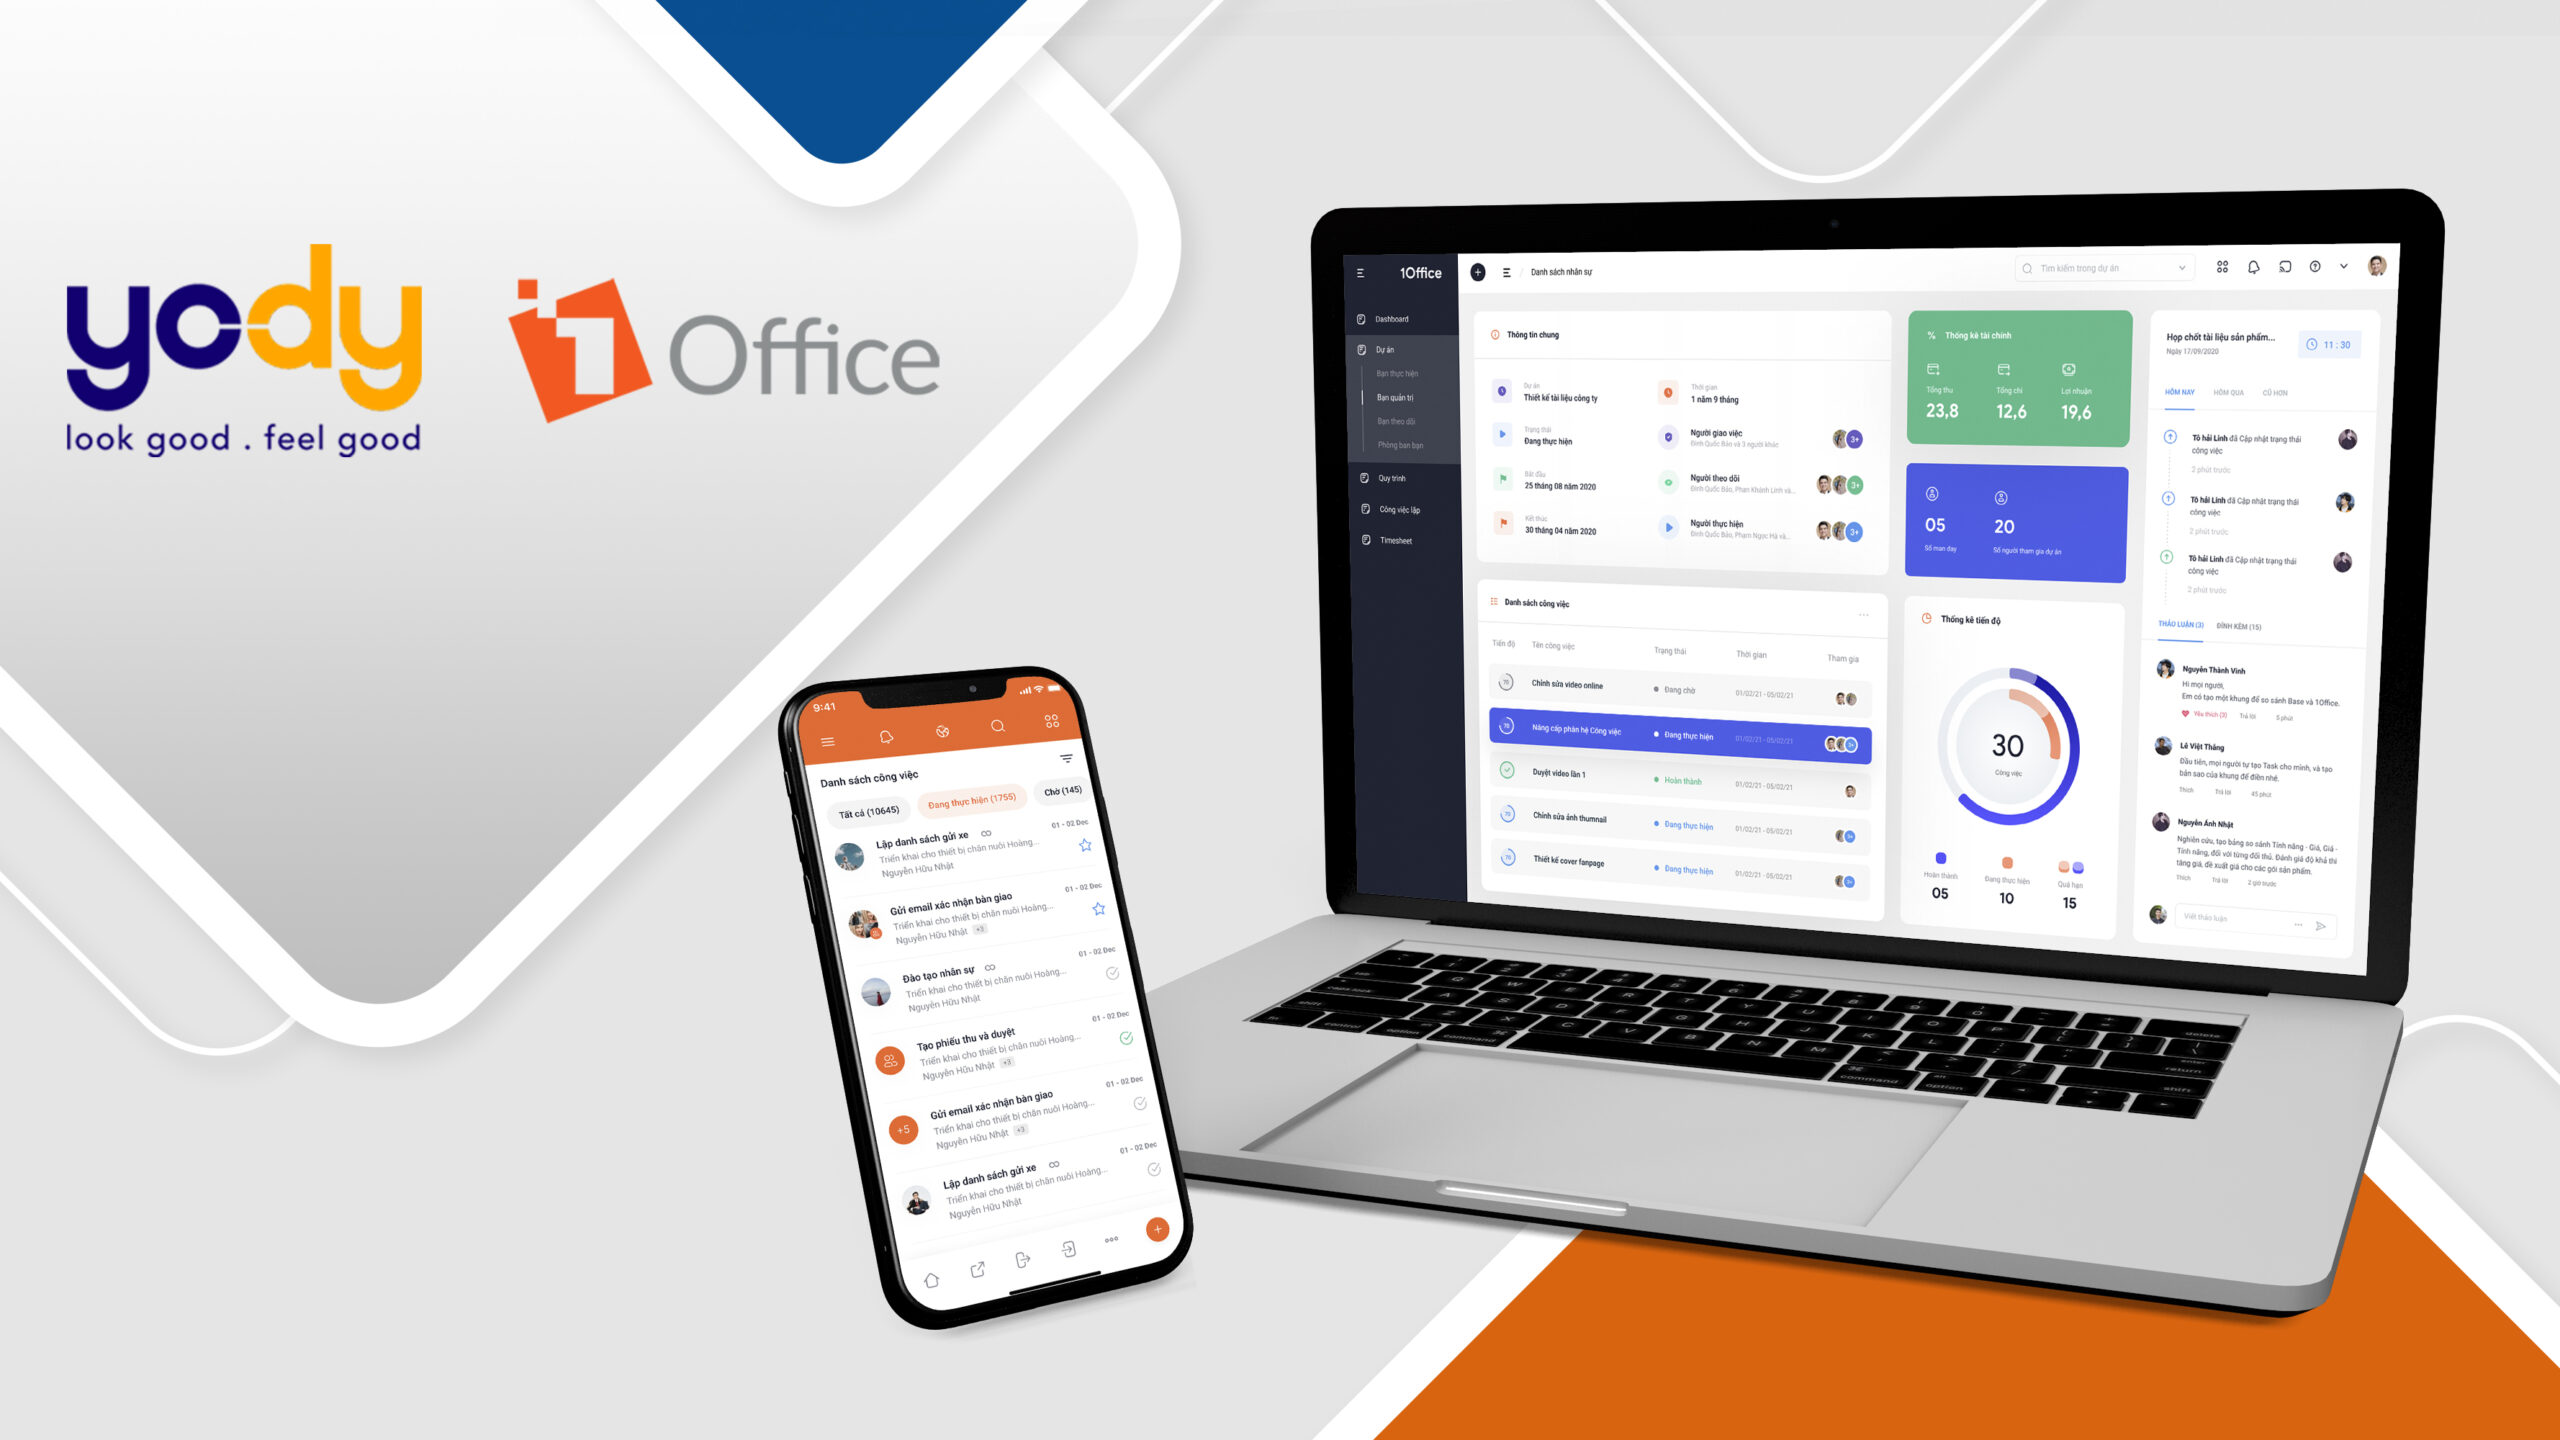 Yody ứng dụng 1Office quản trị nguồn nhân lực và quy trình công việc